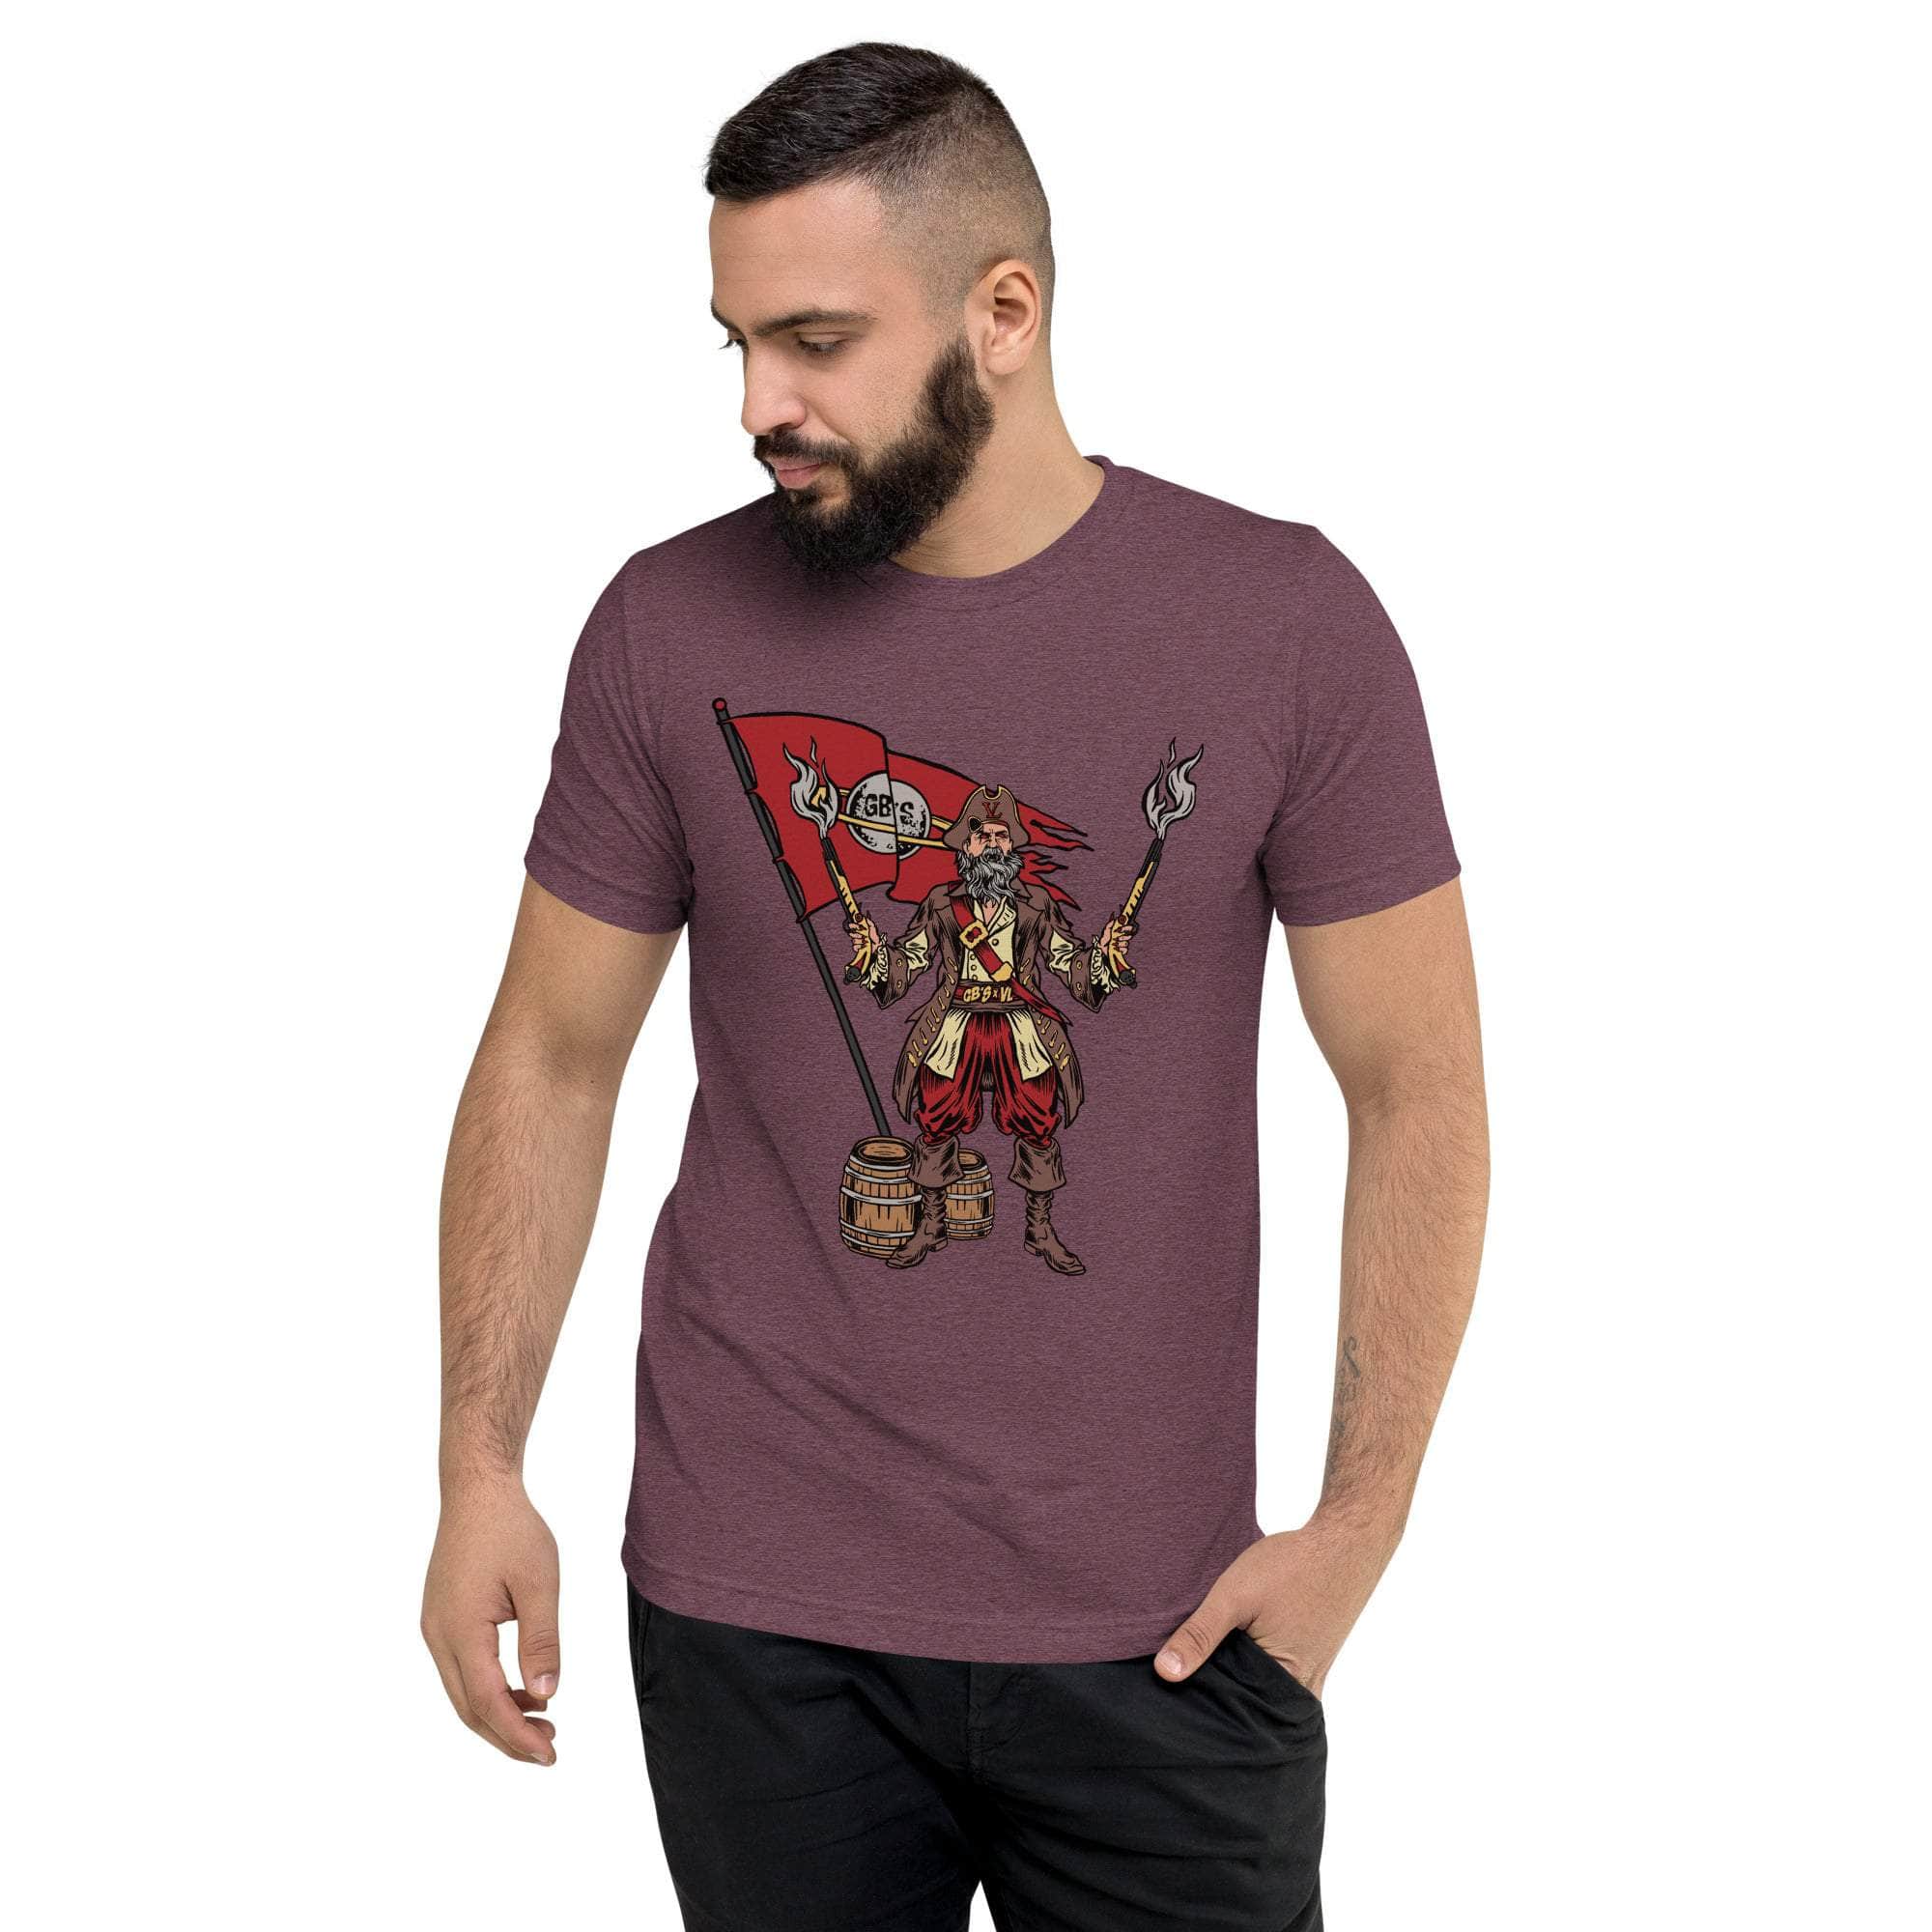 GBNY Maroon Triblend / XS Vamp Life X GBNY "Pirate Vamp" T-shirt - Men's 1187077_6544